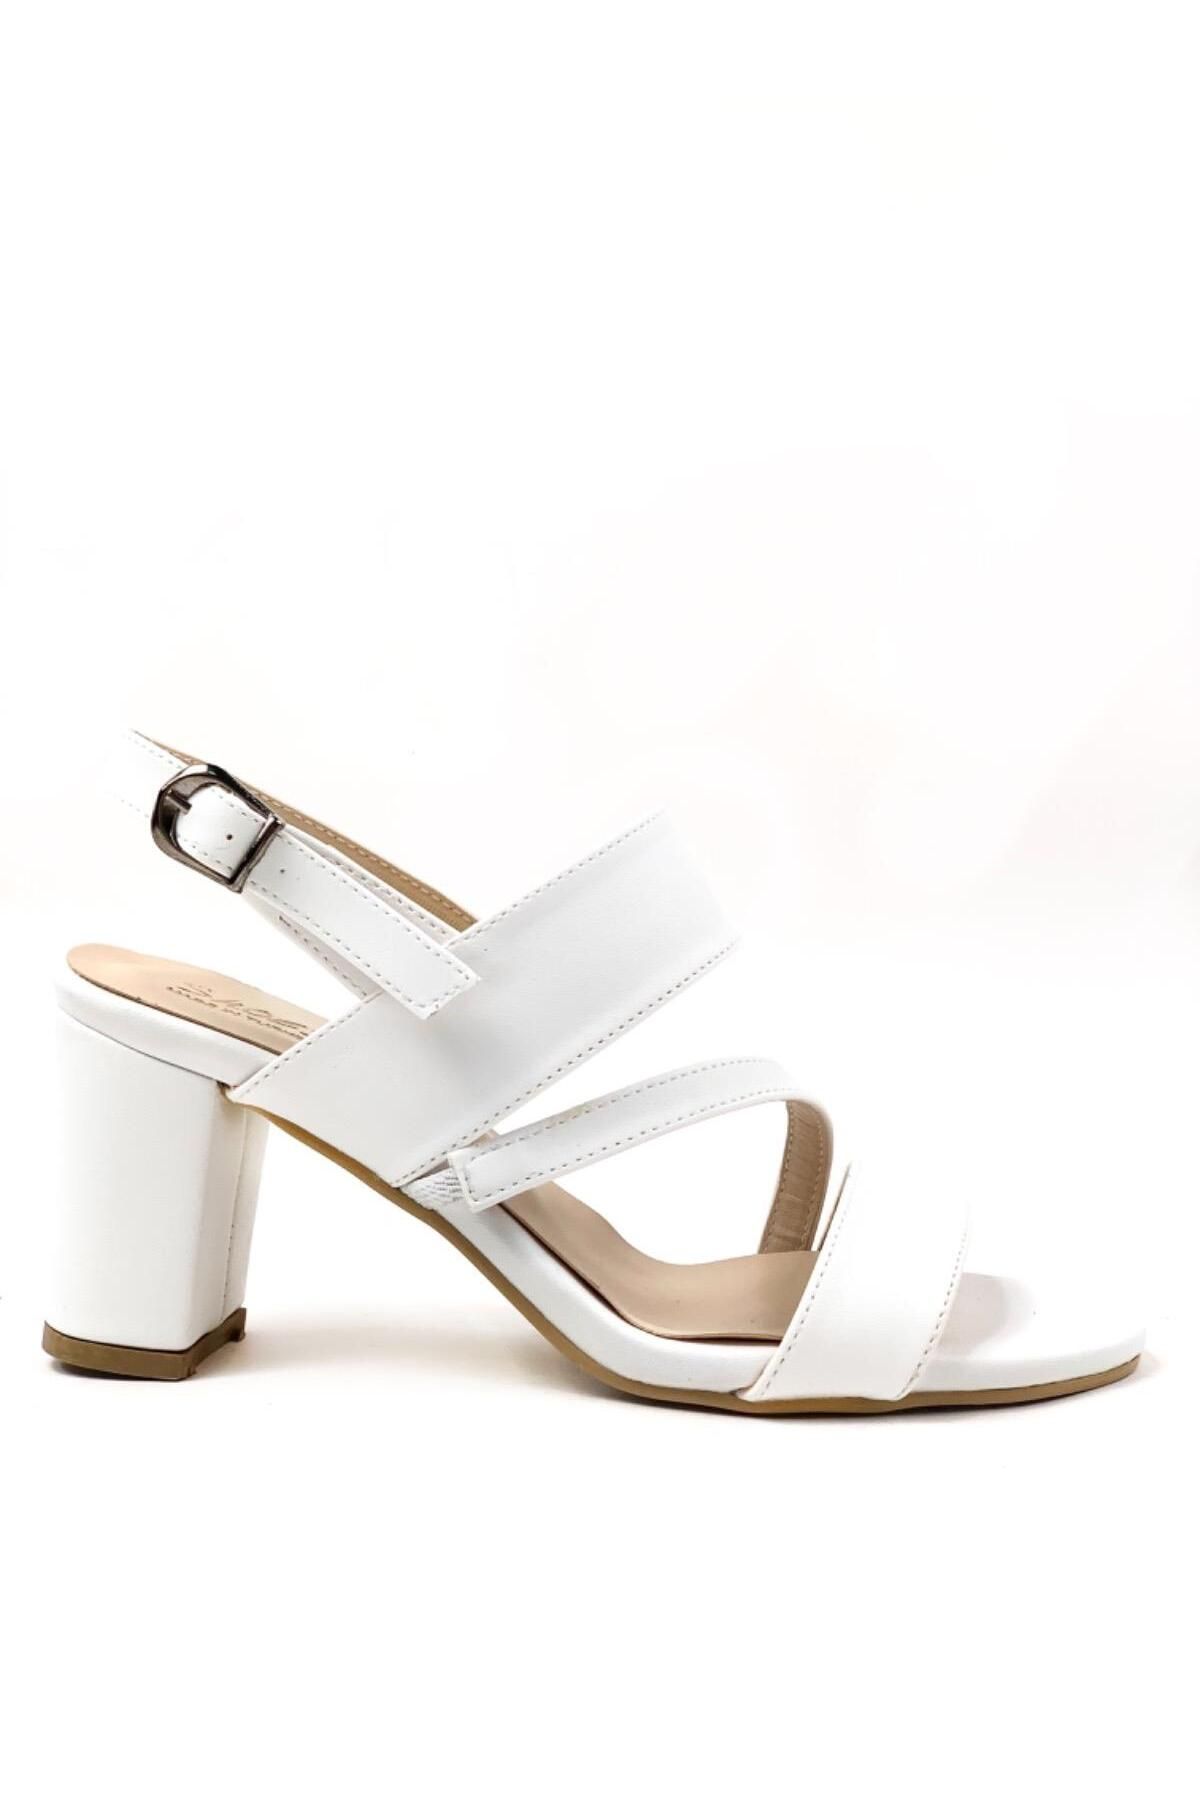 bescobel Kadın Ponya Beyaz Bilekten Bağlama Topuklu Günlük Sandalet Ayakkabı